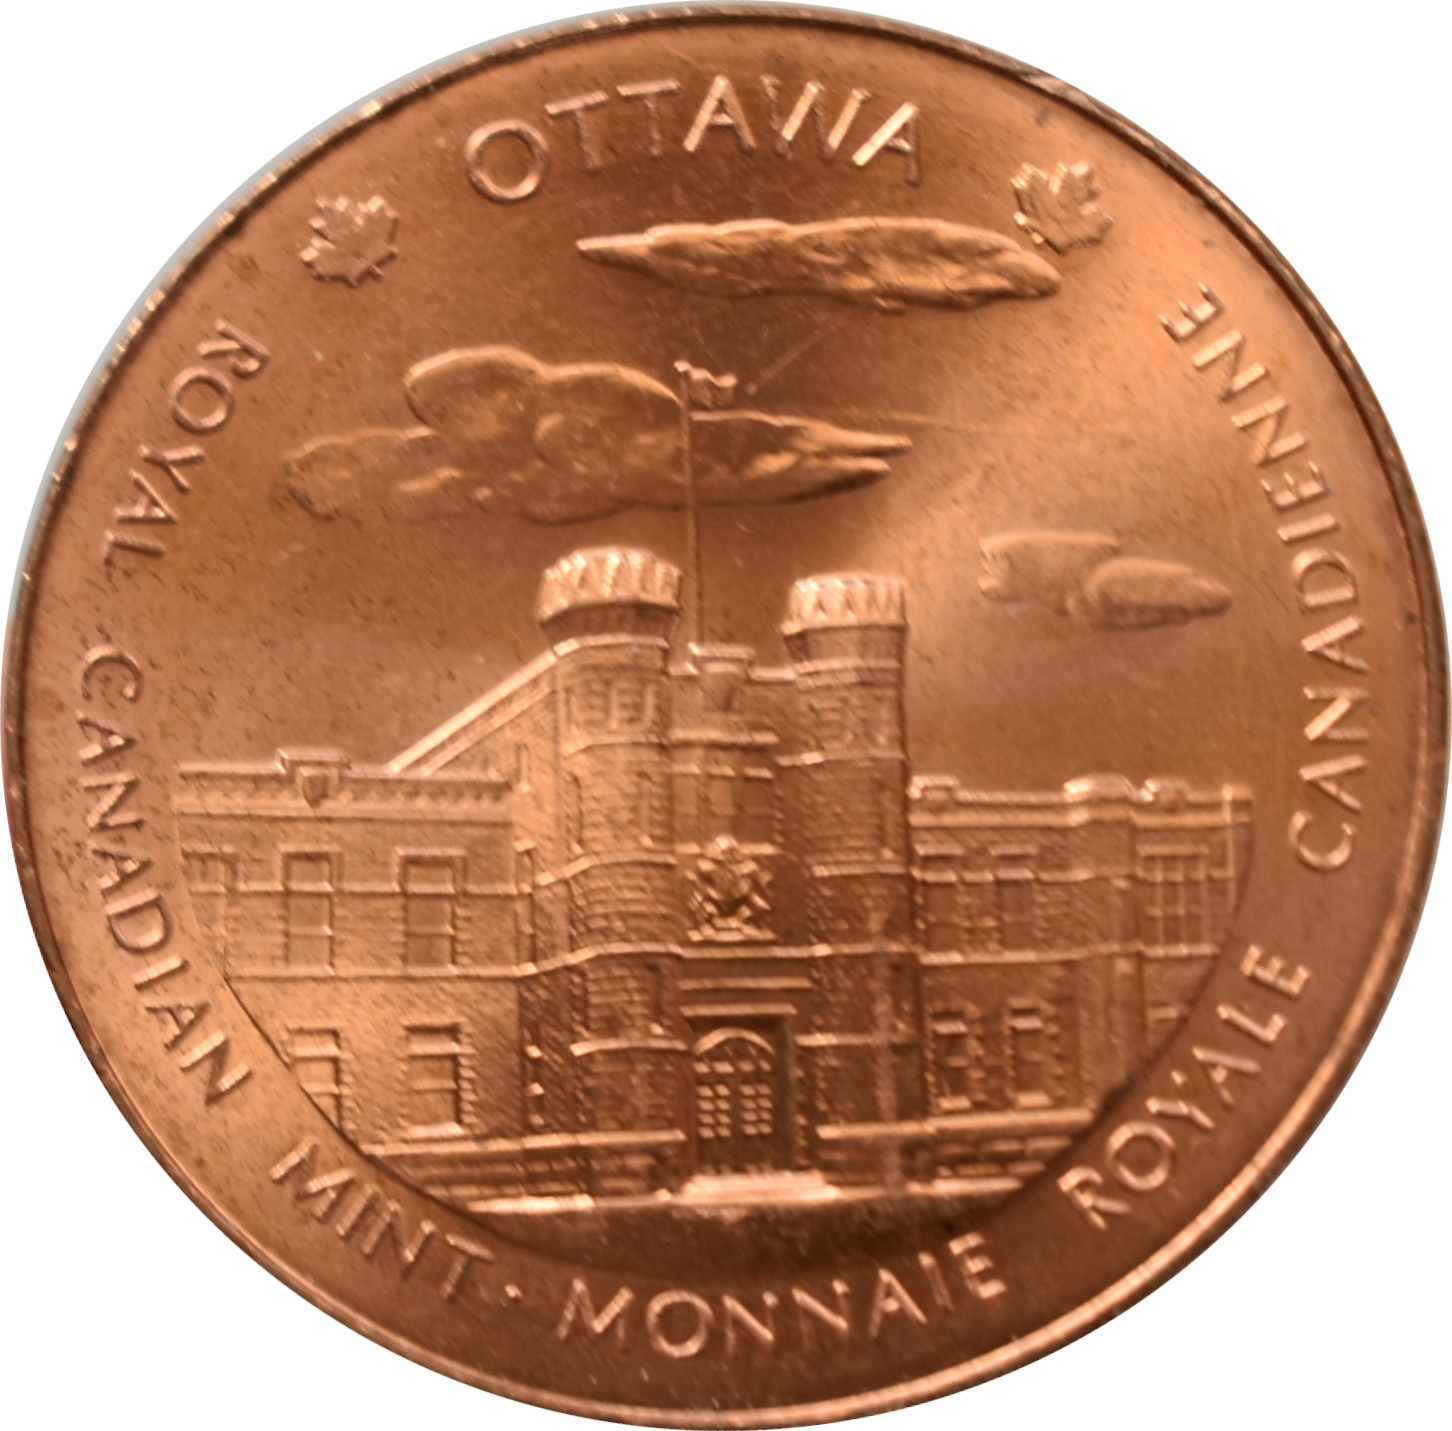 Royal Canadian Mint Medal - Ottawa & Winnipeg